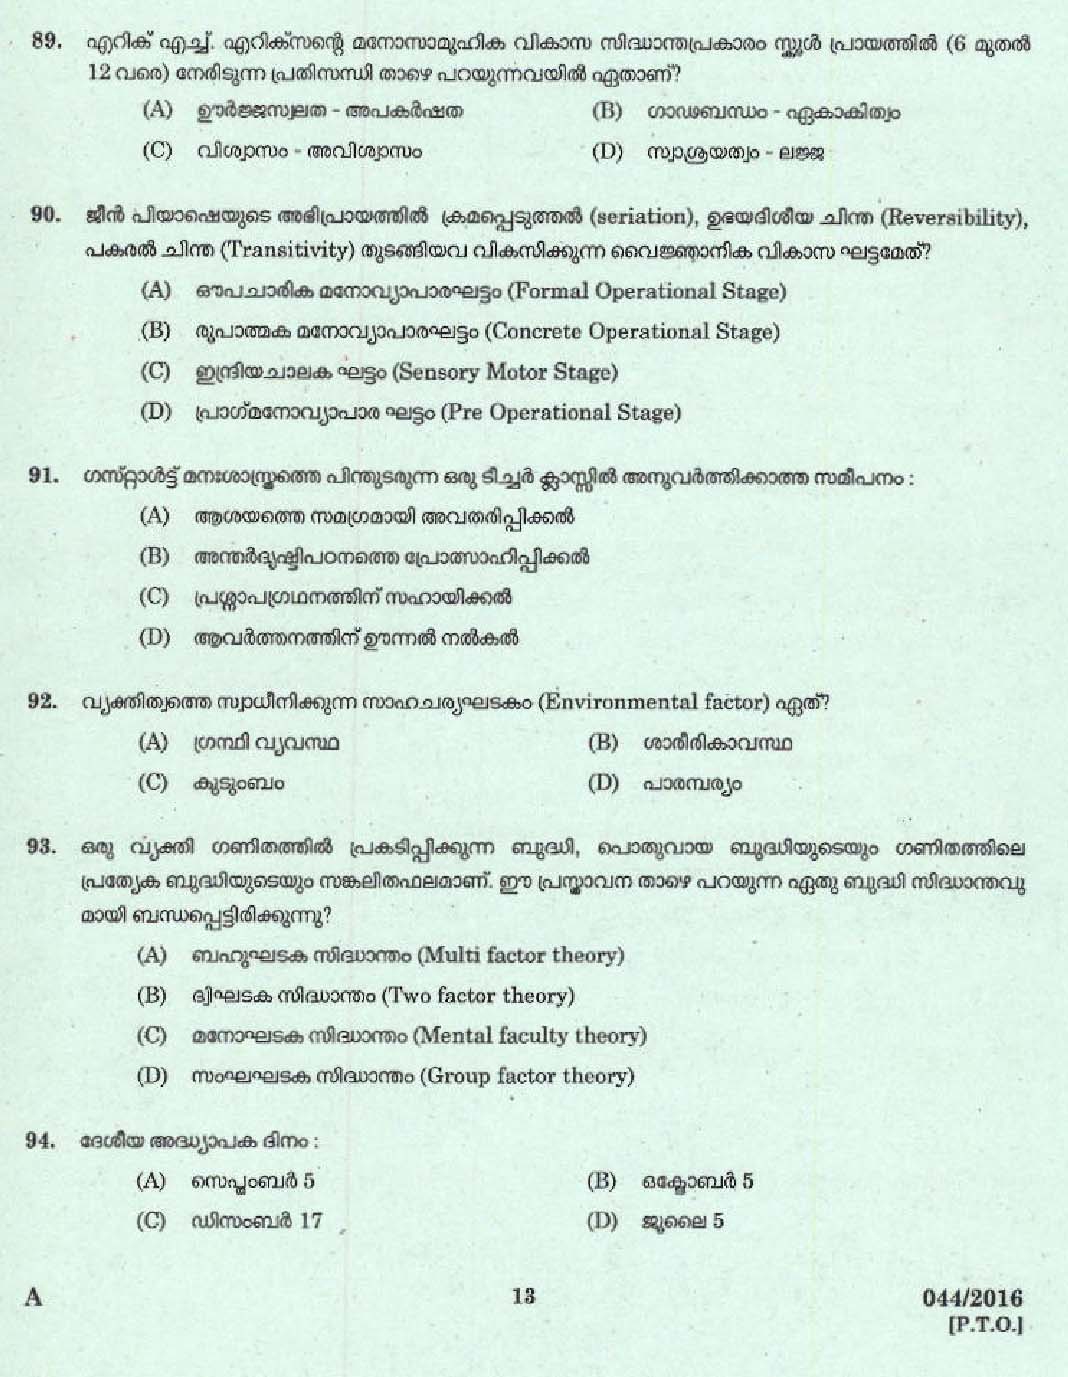 Kerala PSC L P School Assistant Question Code 0442016 11